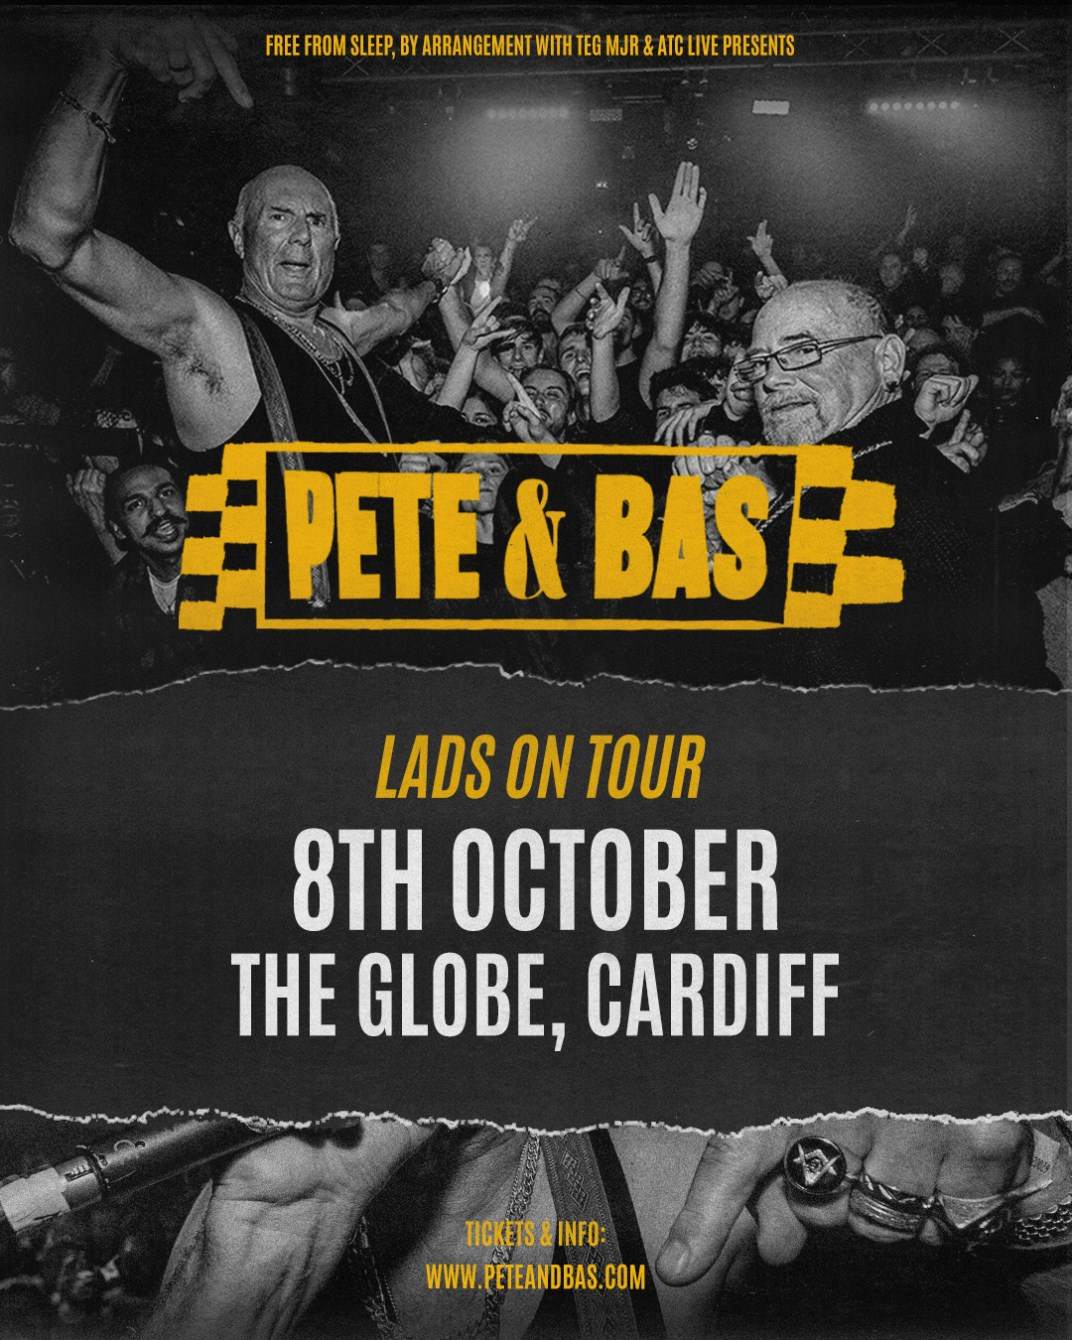 Pete & Bas - Cardiff - Página trasera